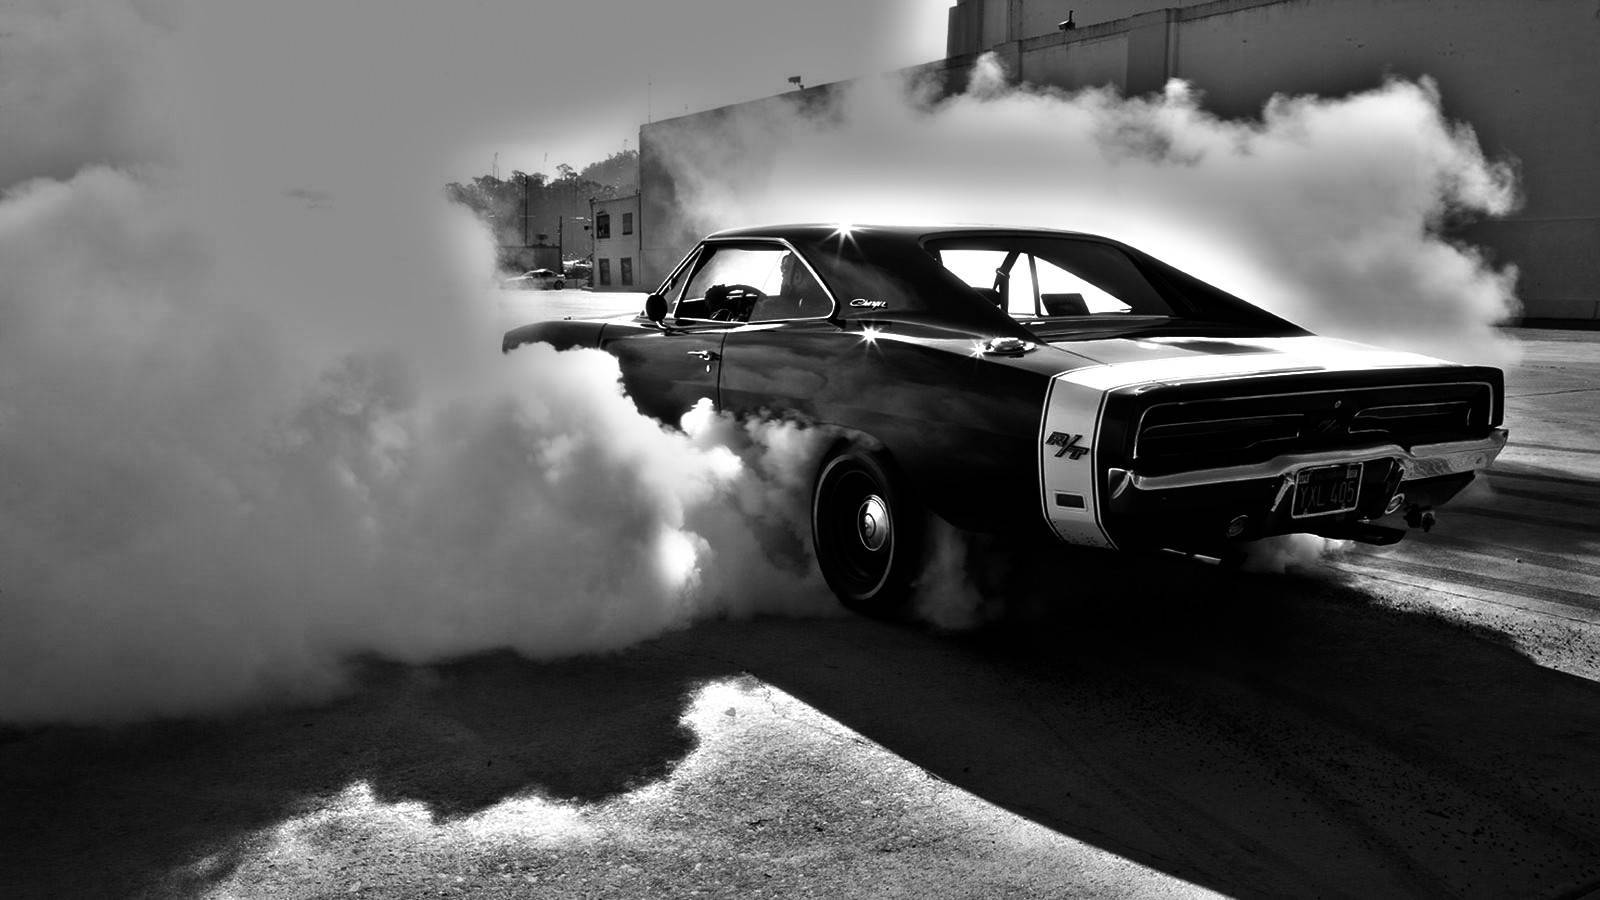 Roaring Muscle Car Enveloped in Smoke Wallpaper